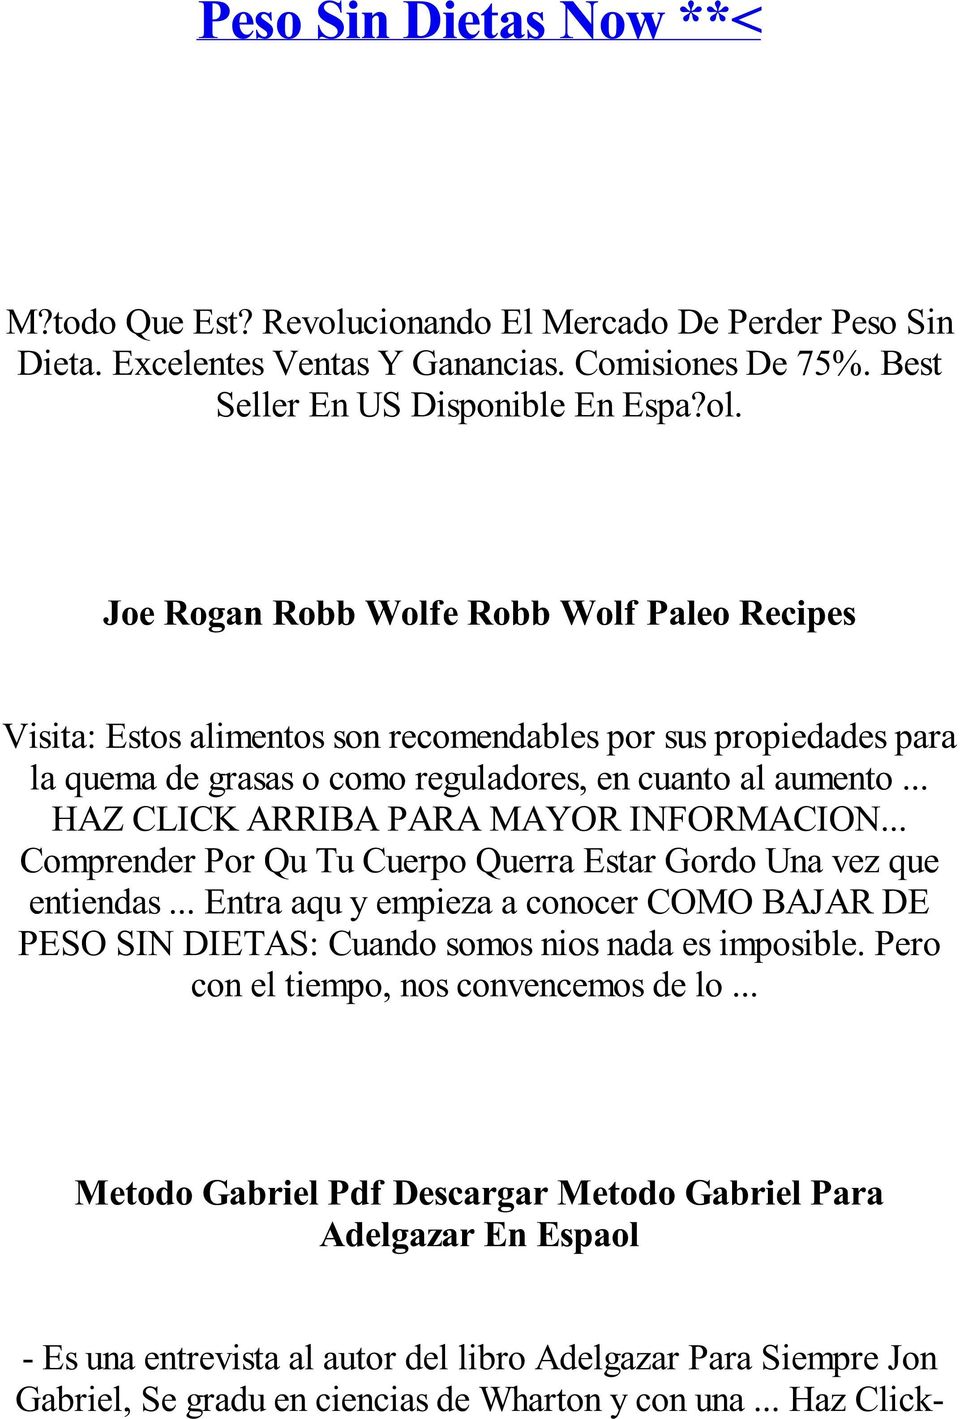 Joe Rogan Robb Wolfe Robb Wolf Paleo Recipes Visita: Estos alimentos son recomendables por sus propiedades para la quema de grasas o como reguladores, en cuanto al aumento.